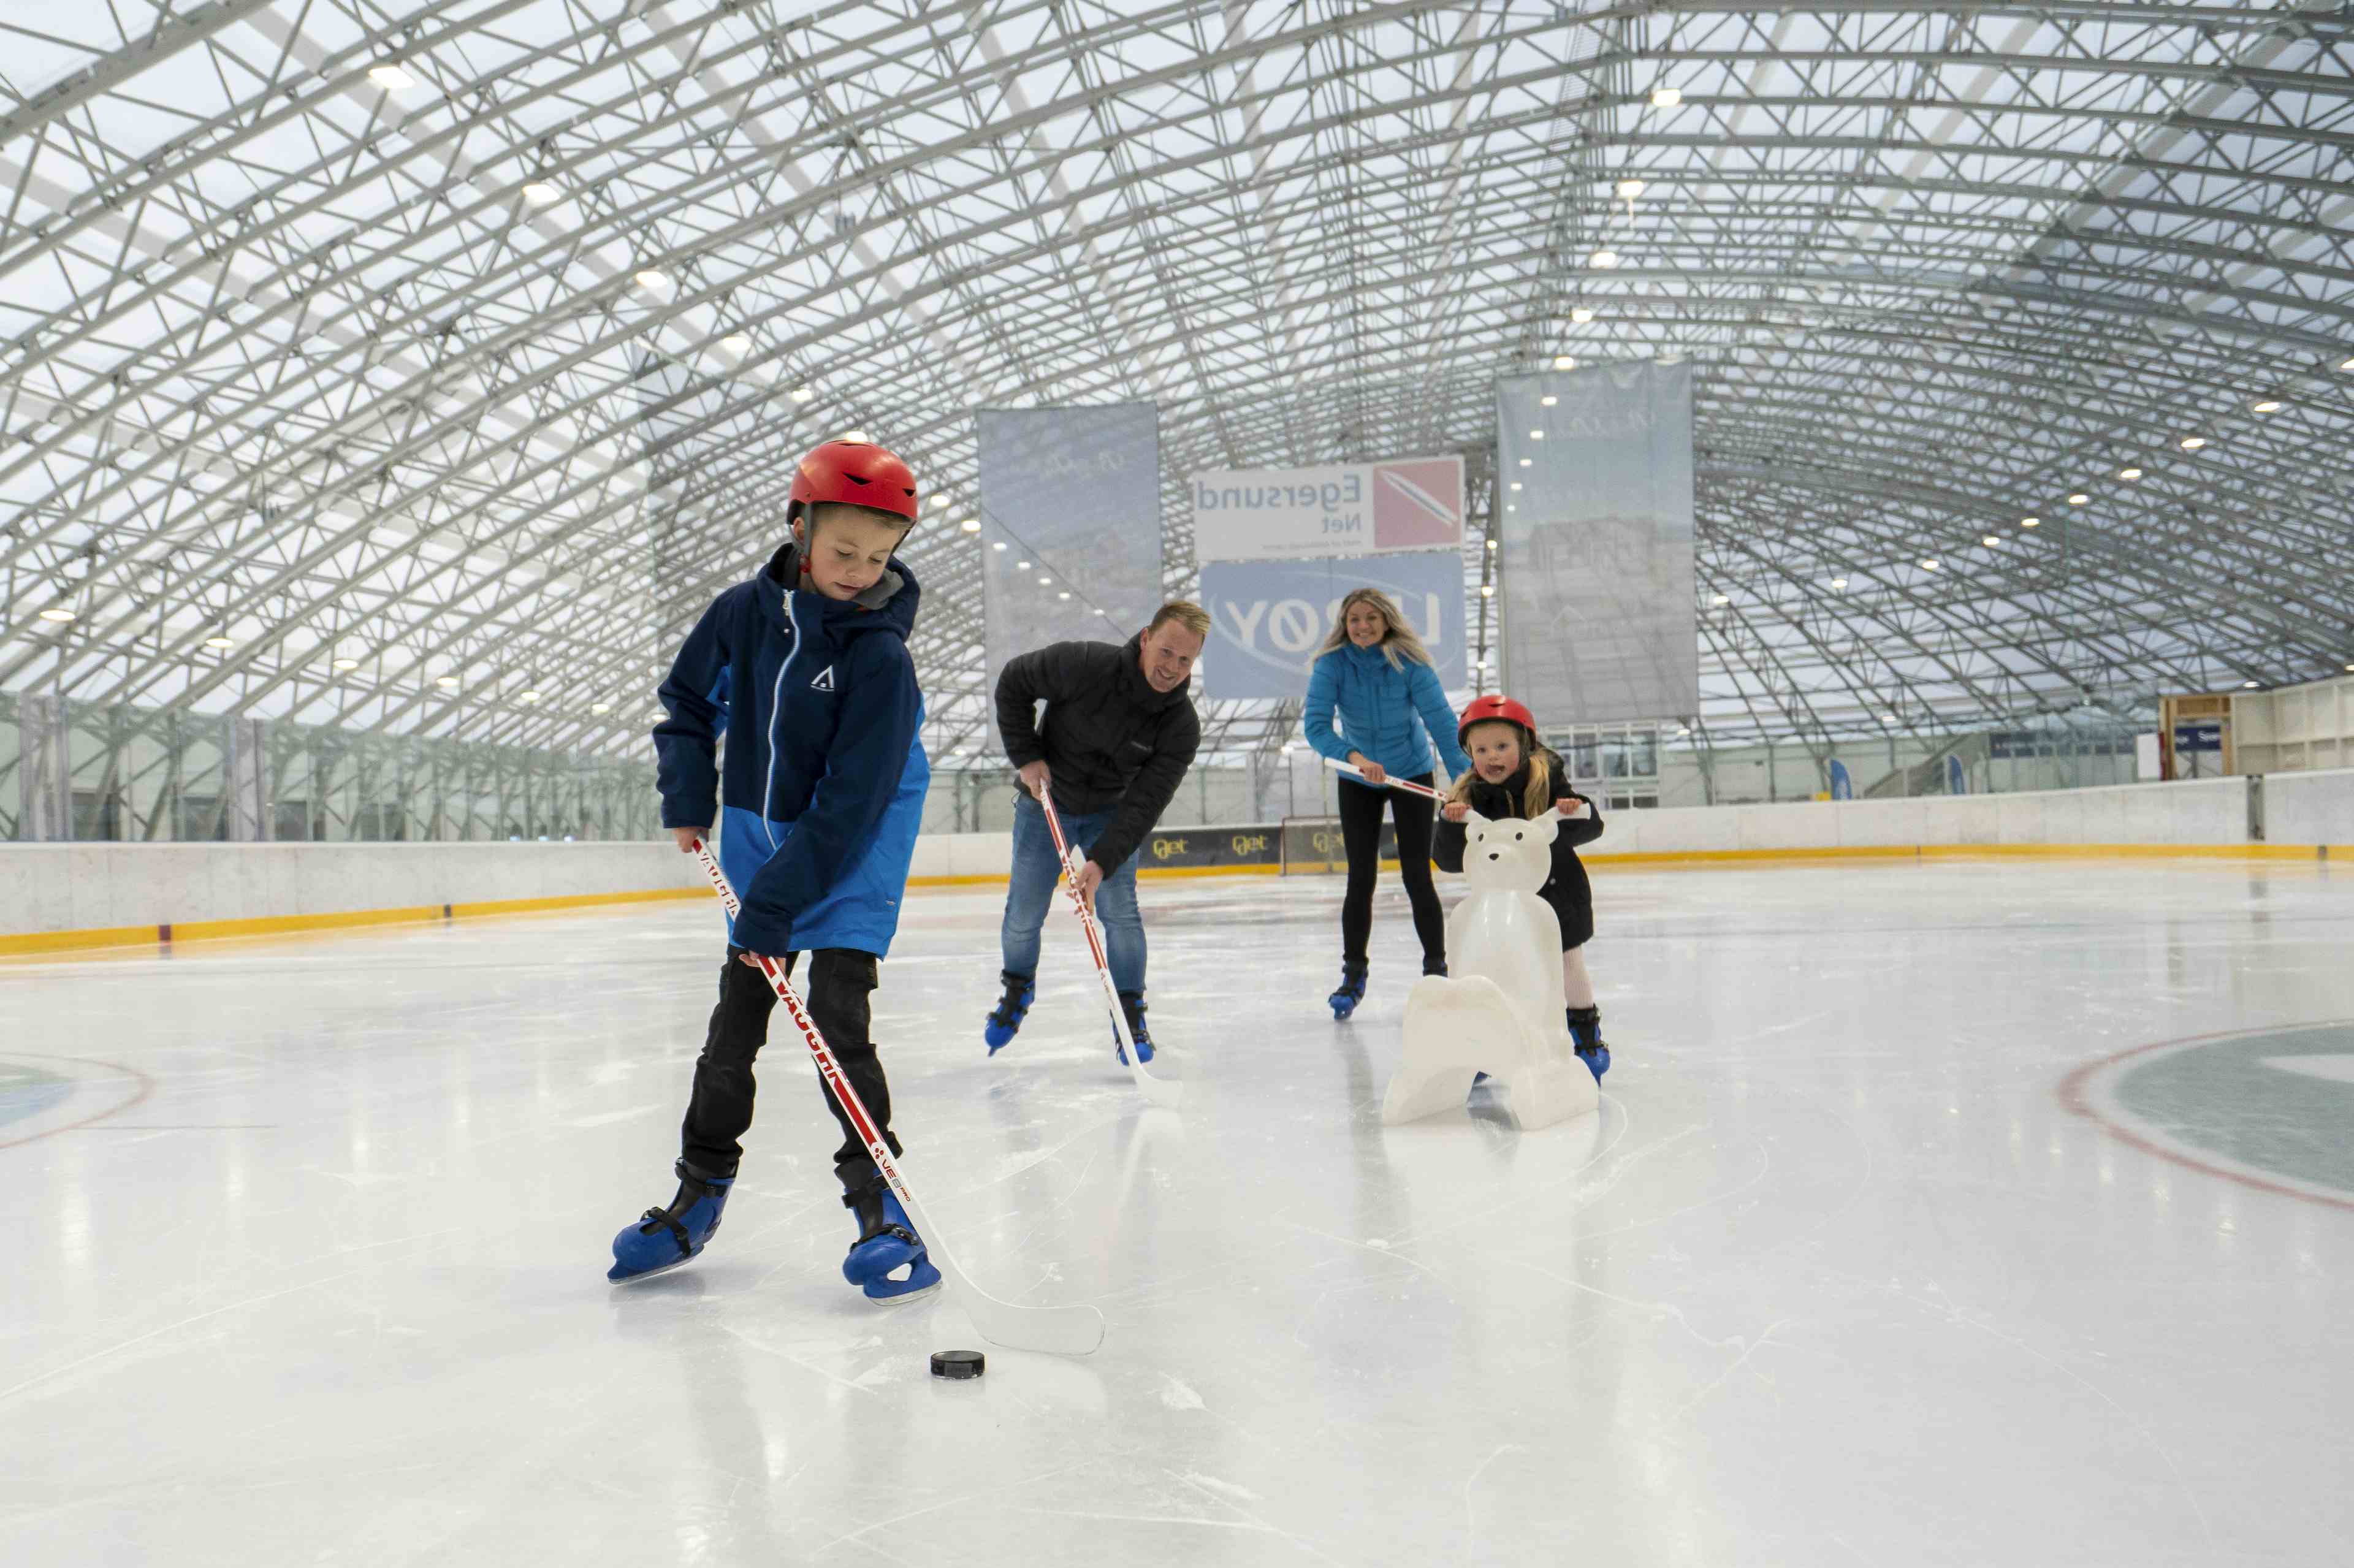 Arena Nordvest is-og skøytehall